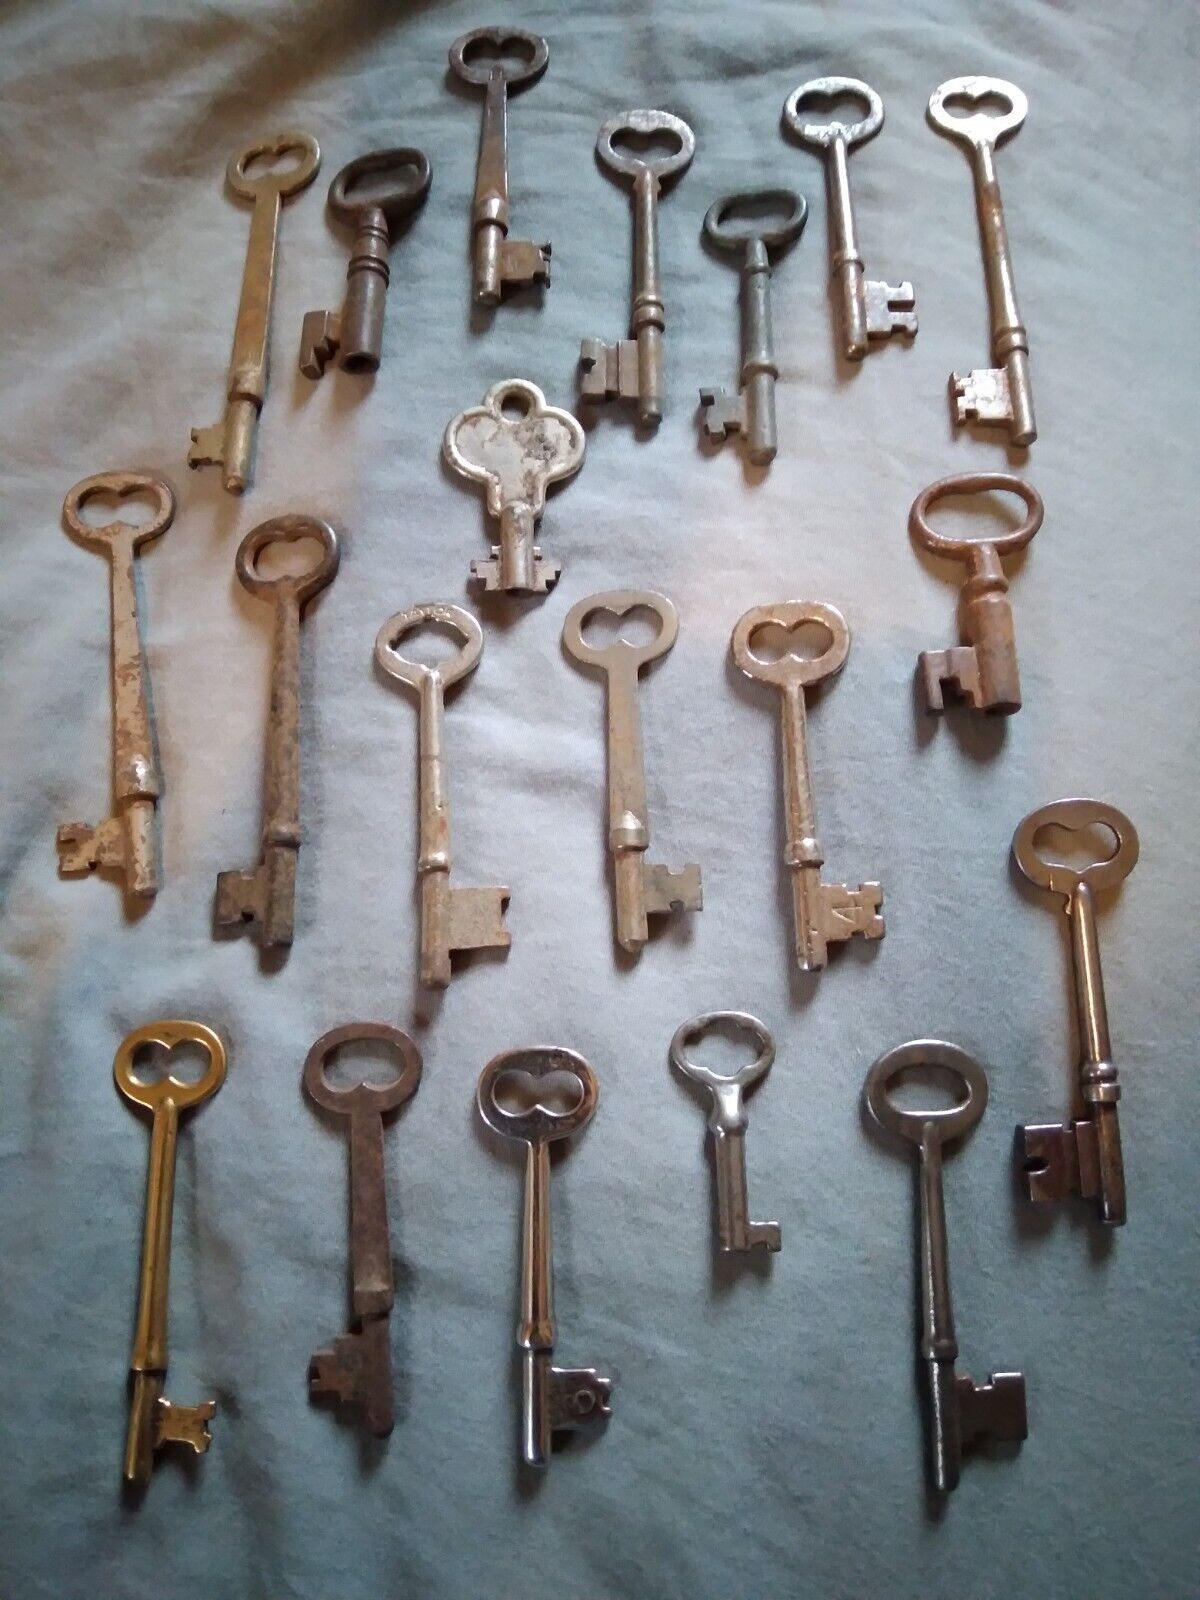 Mixed Lot of 20 Old Vintage Antique Skeleton Keys.